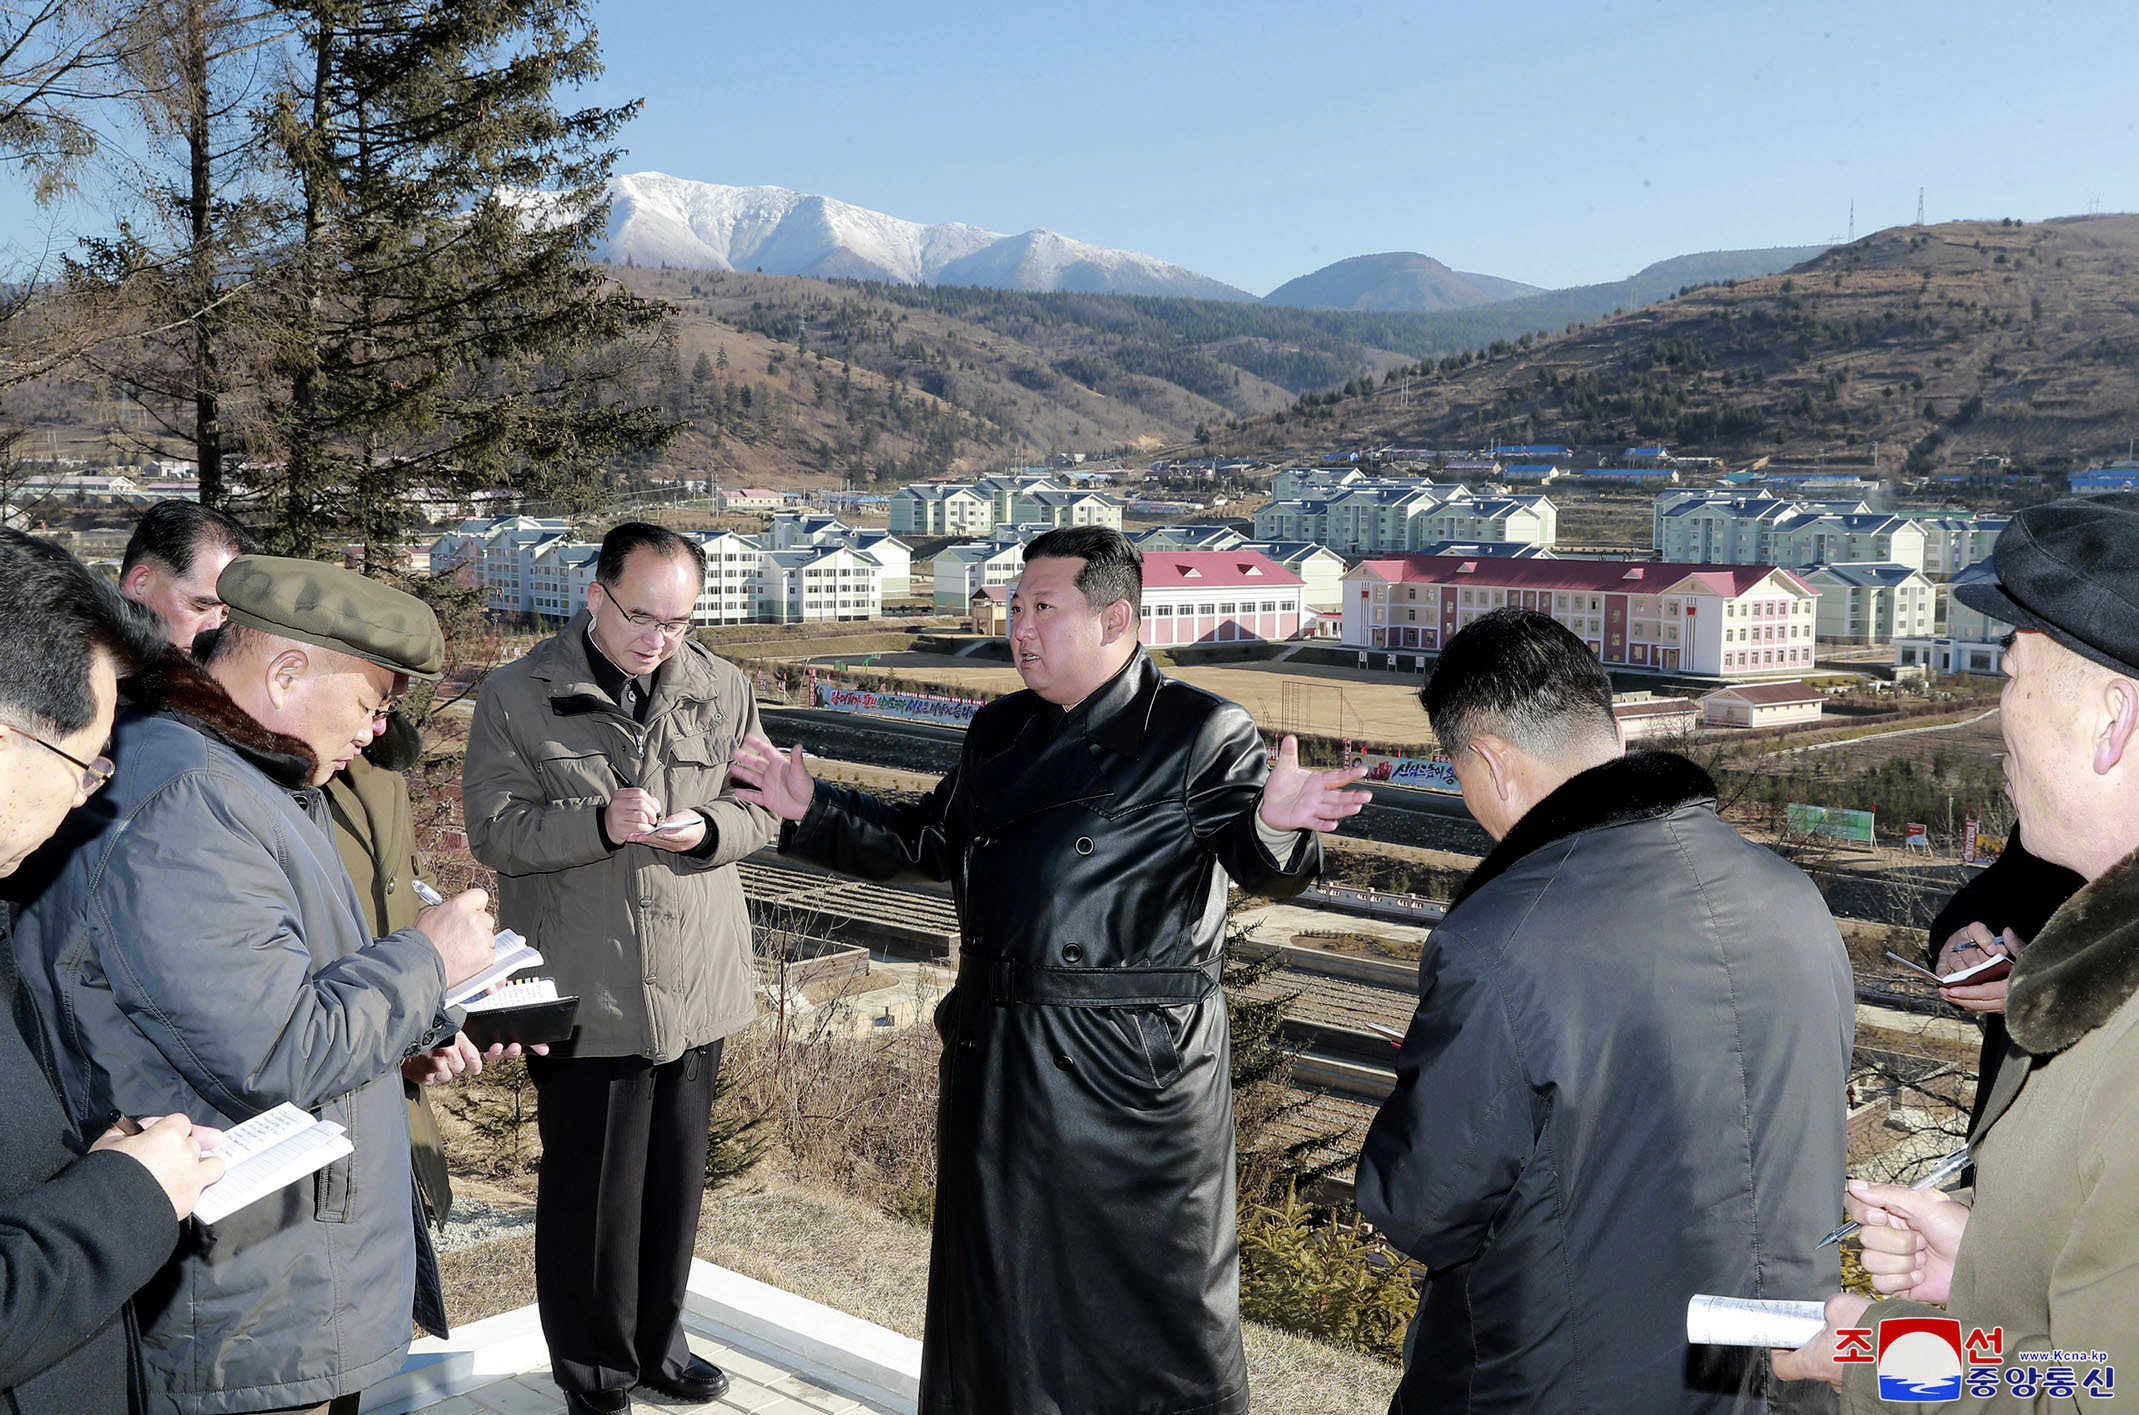 Imagen difundida por Corea del Norte de su lder visitando la ciudad de Samjiyon.